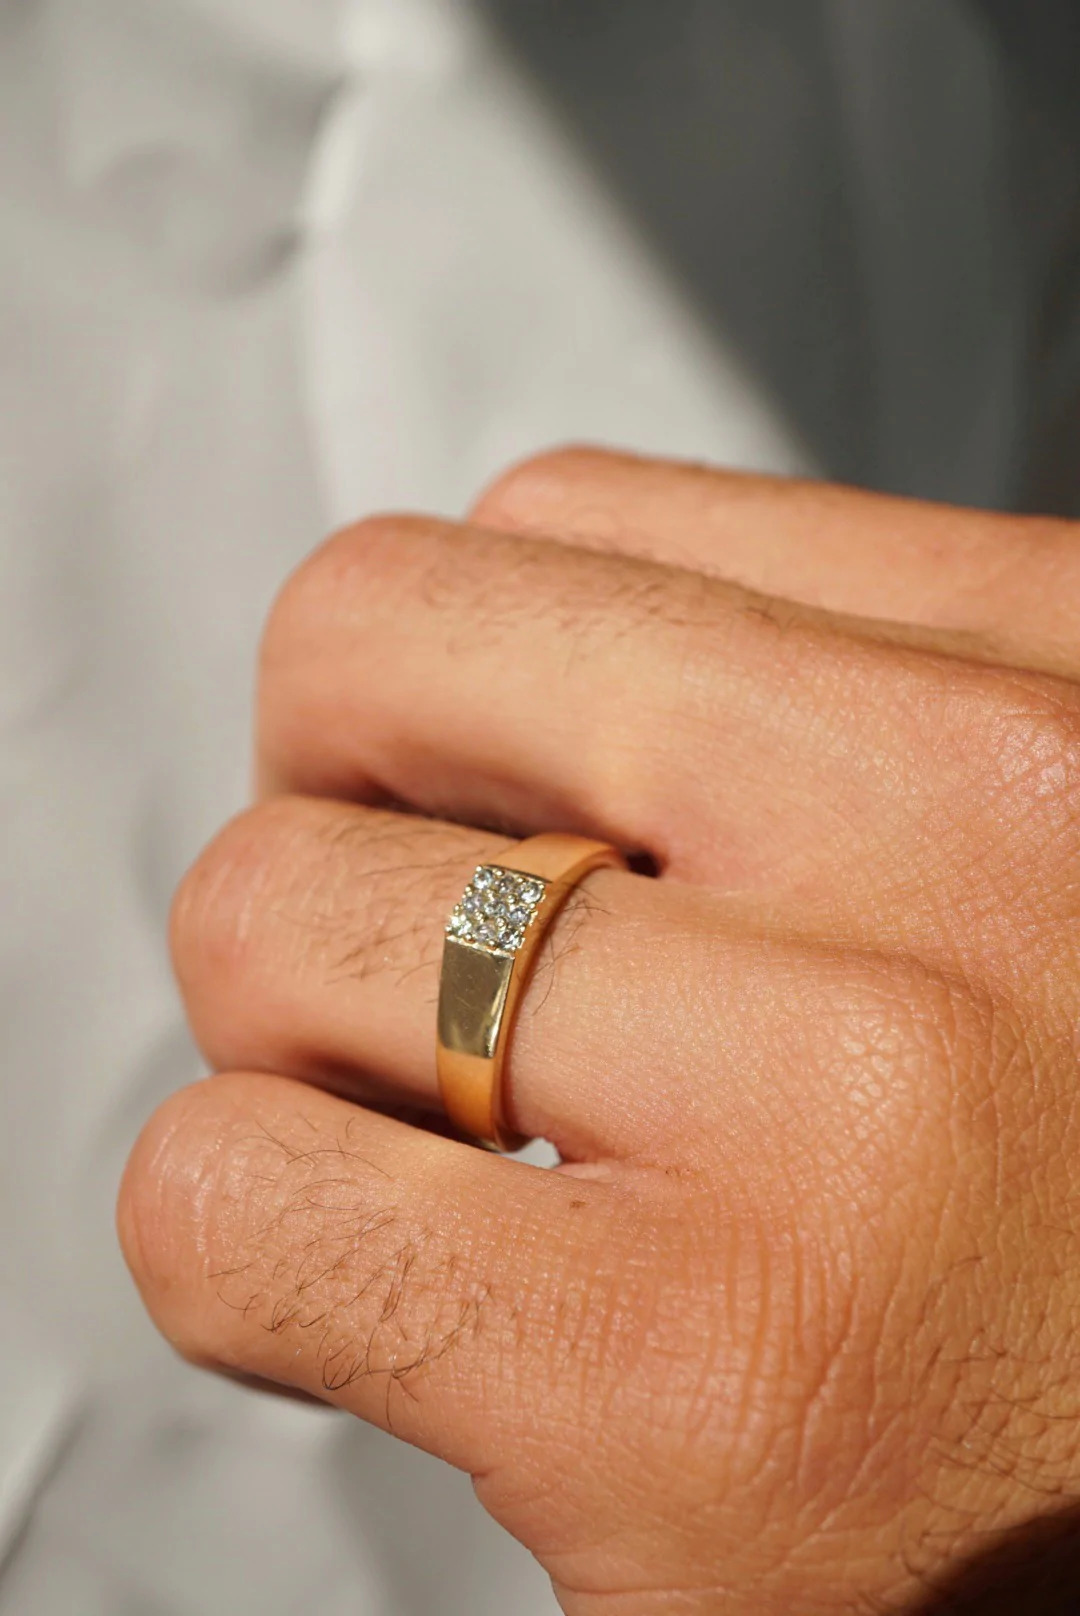 Engagement Rings For Men